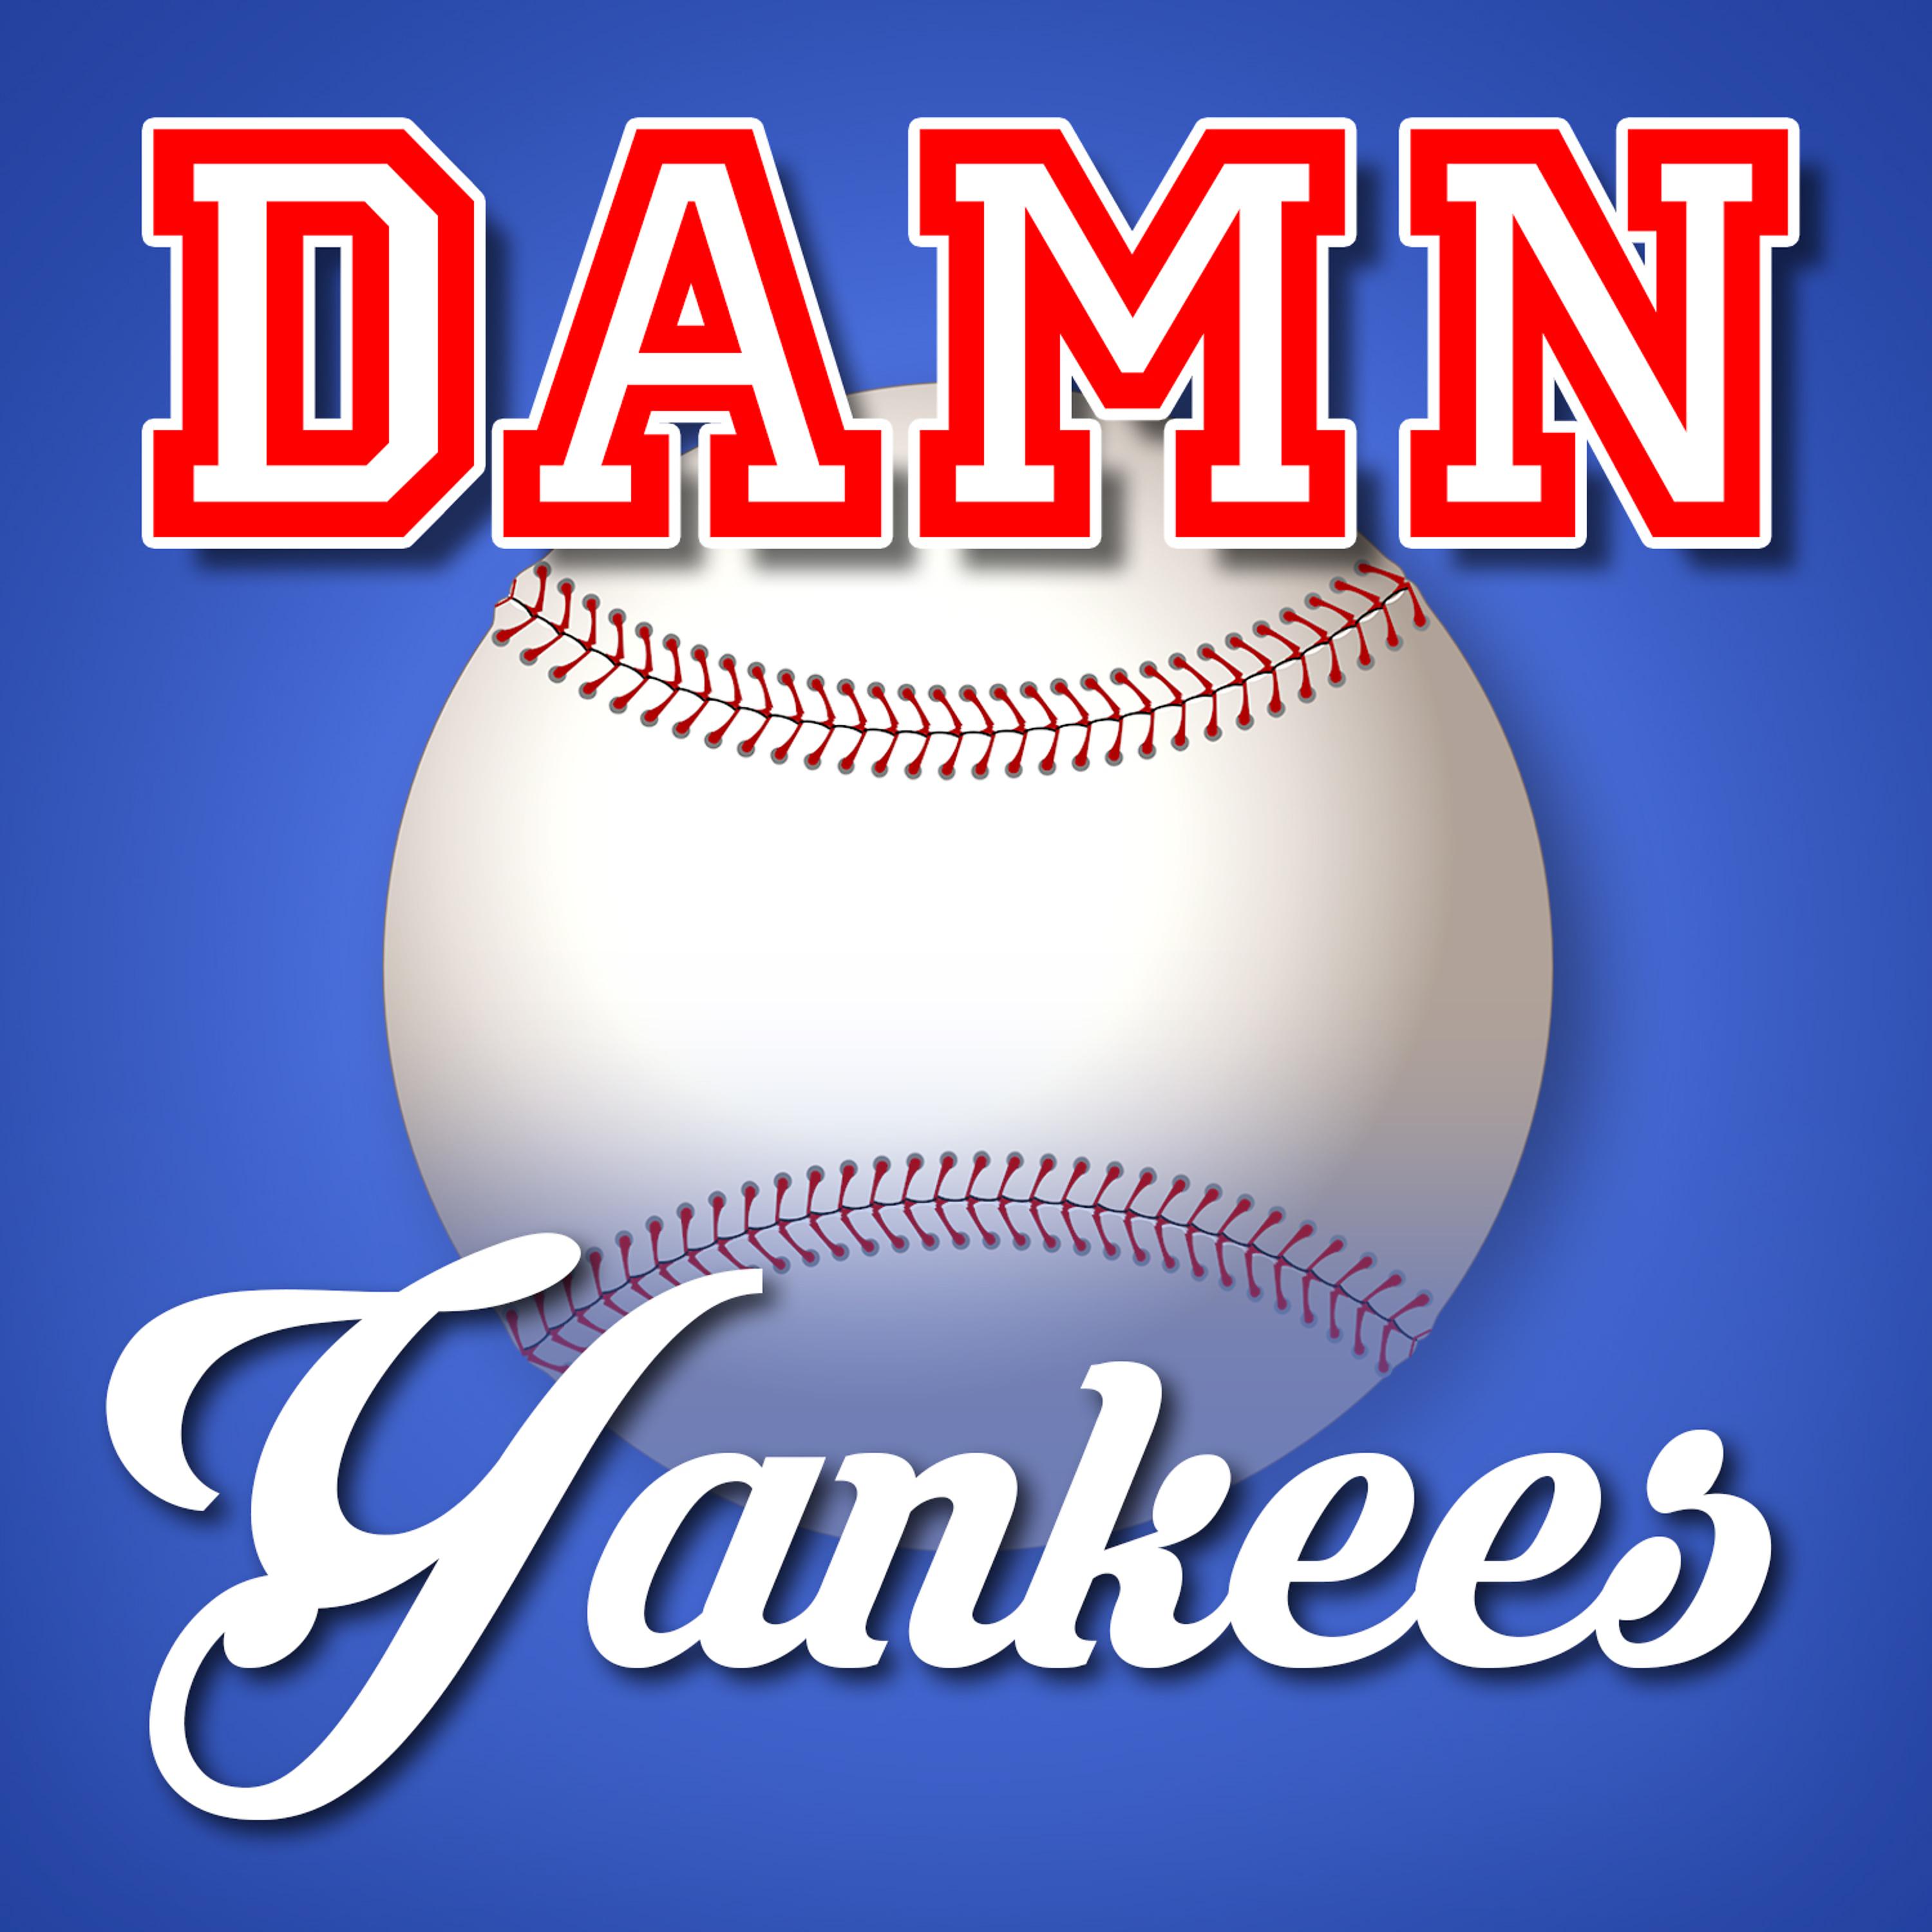 Постер альбома Damn Yankees